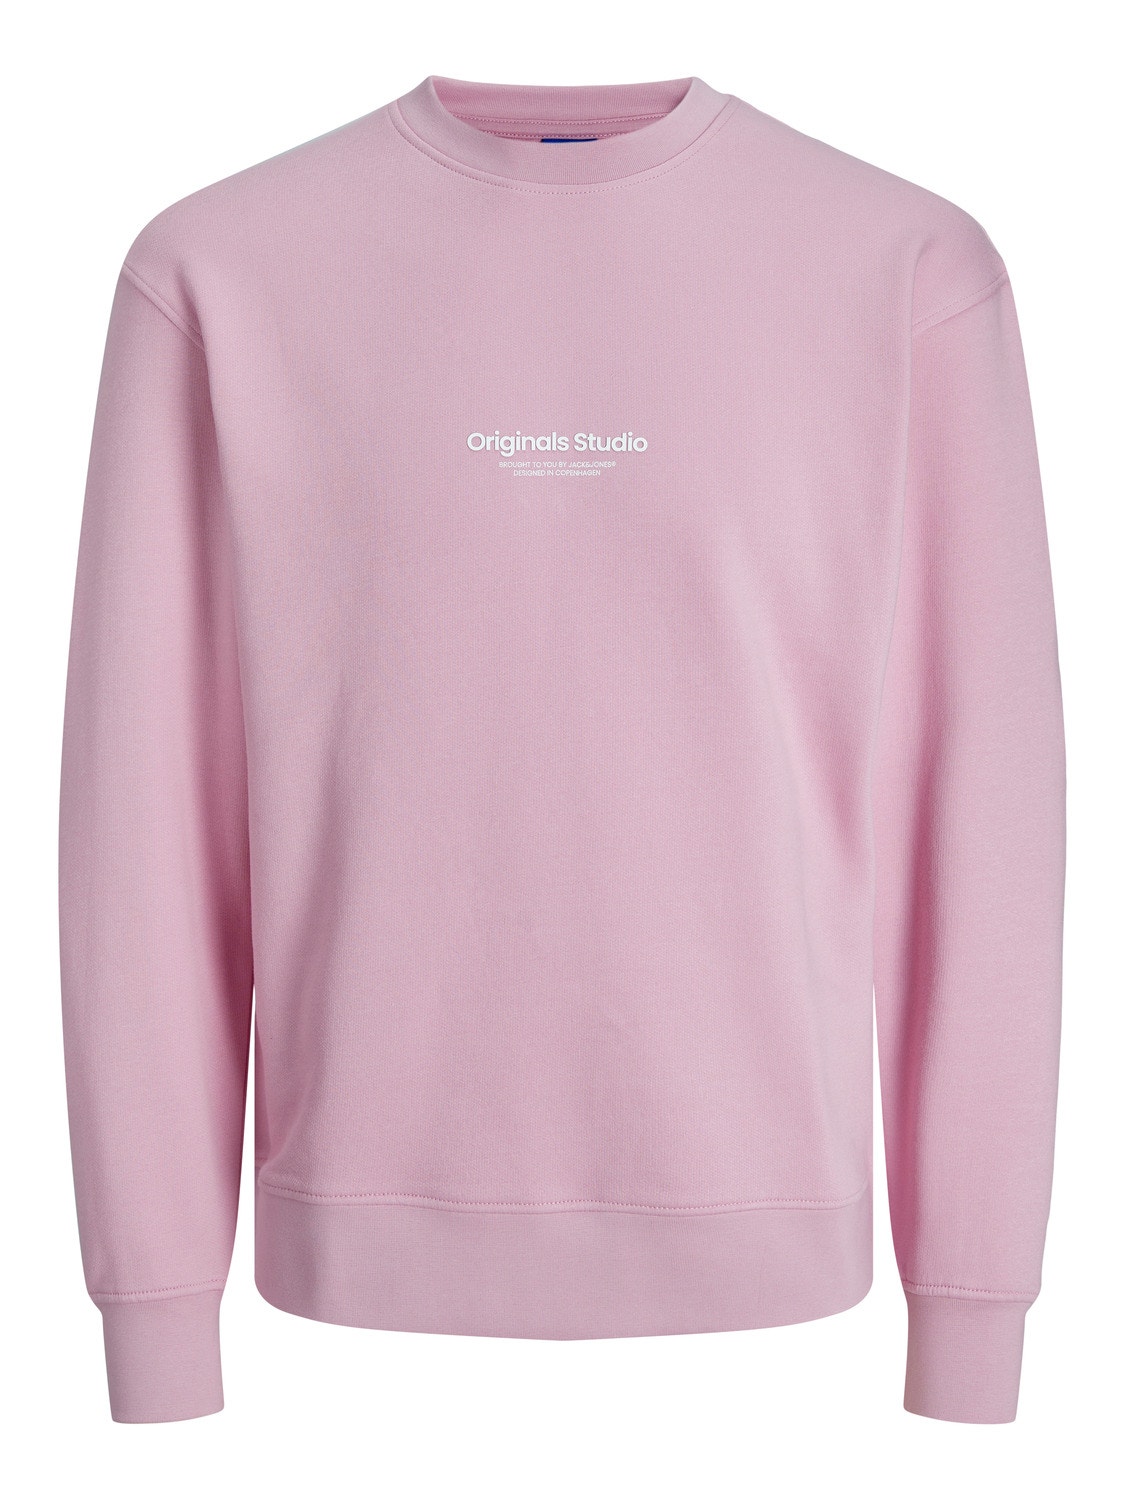 Jack & Jones Printed Crew neck Sweatshirt -Pink Nectar - 12241694